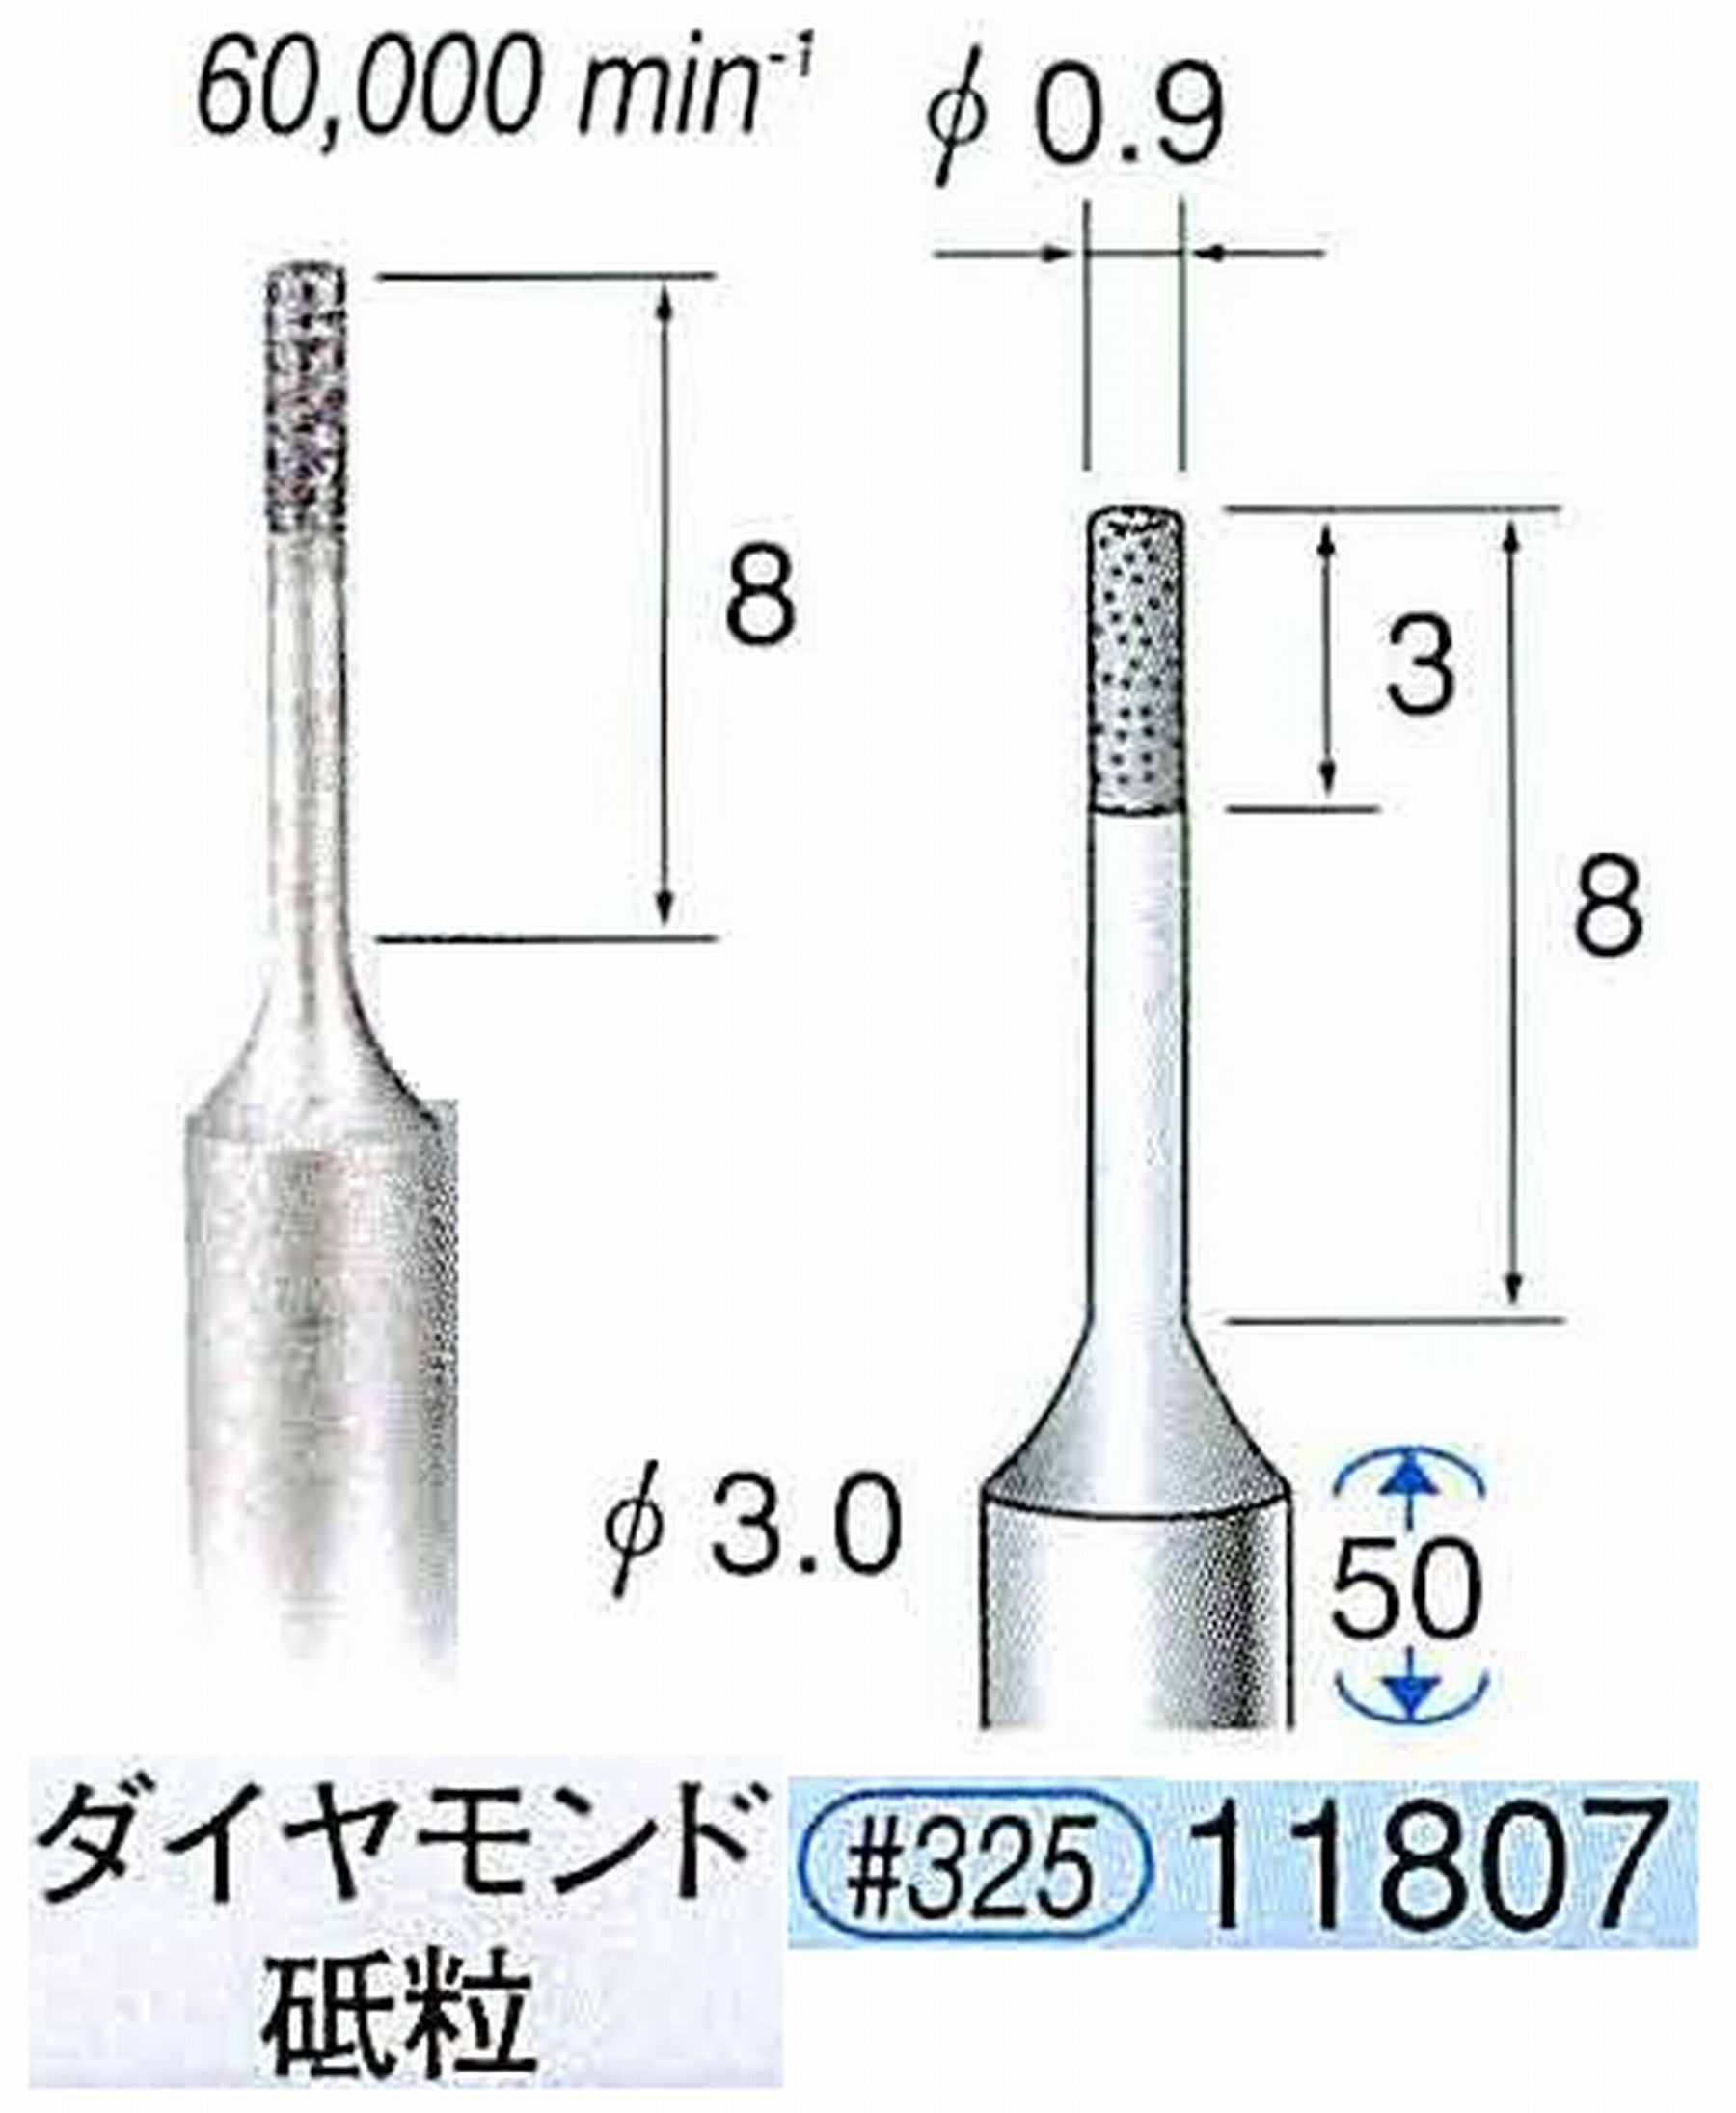 ナカニシ/NAKANISHI SP電着ダイヤモンド ダイヤモンド砥粒 軸径(シャンク)φ3.0mm 11807